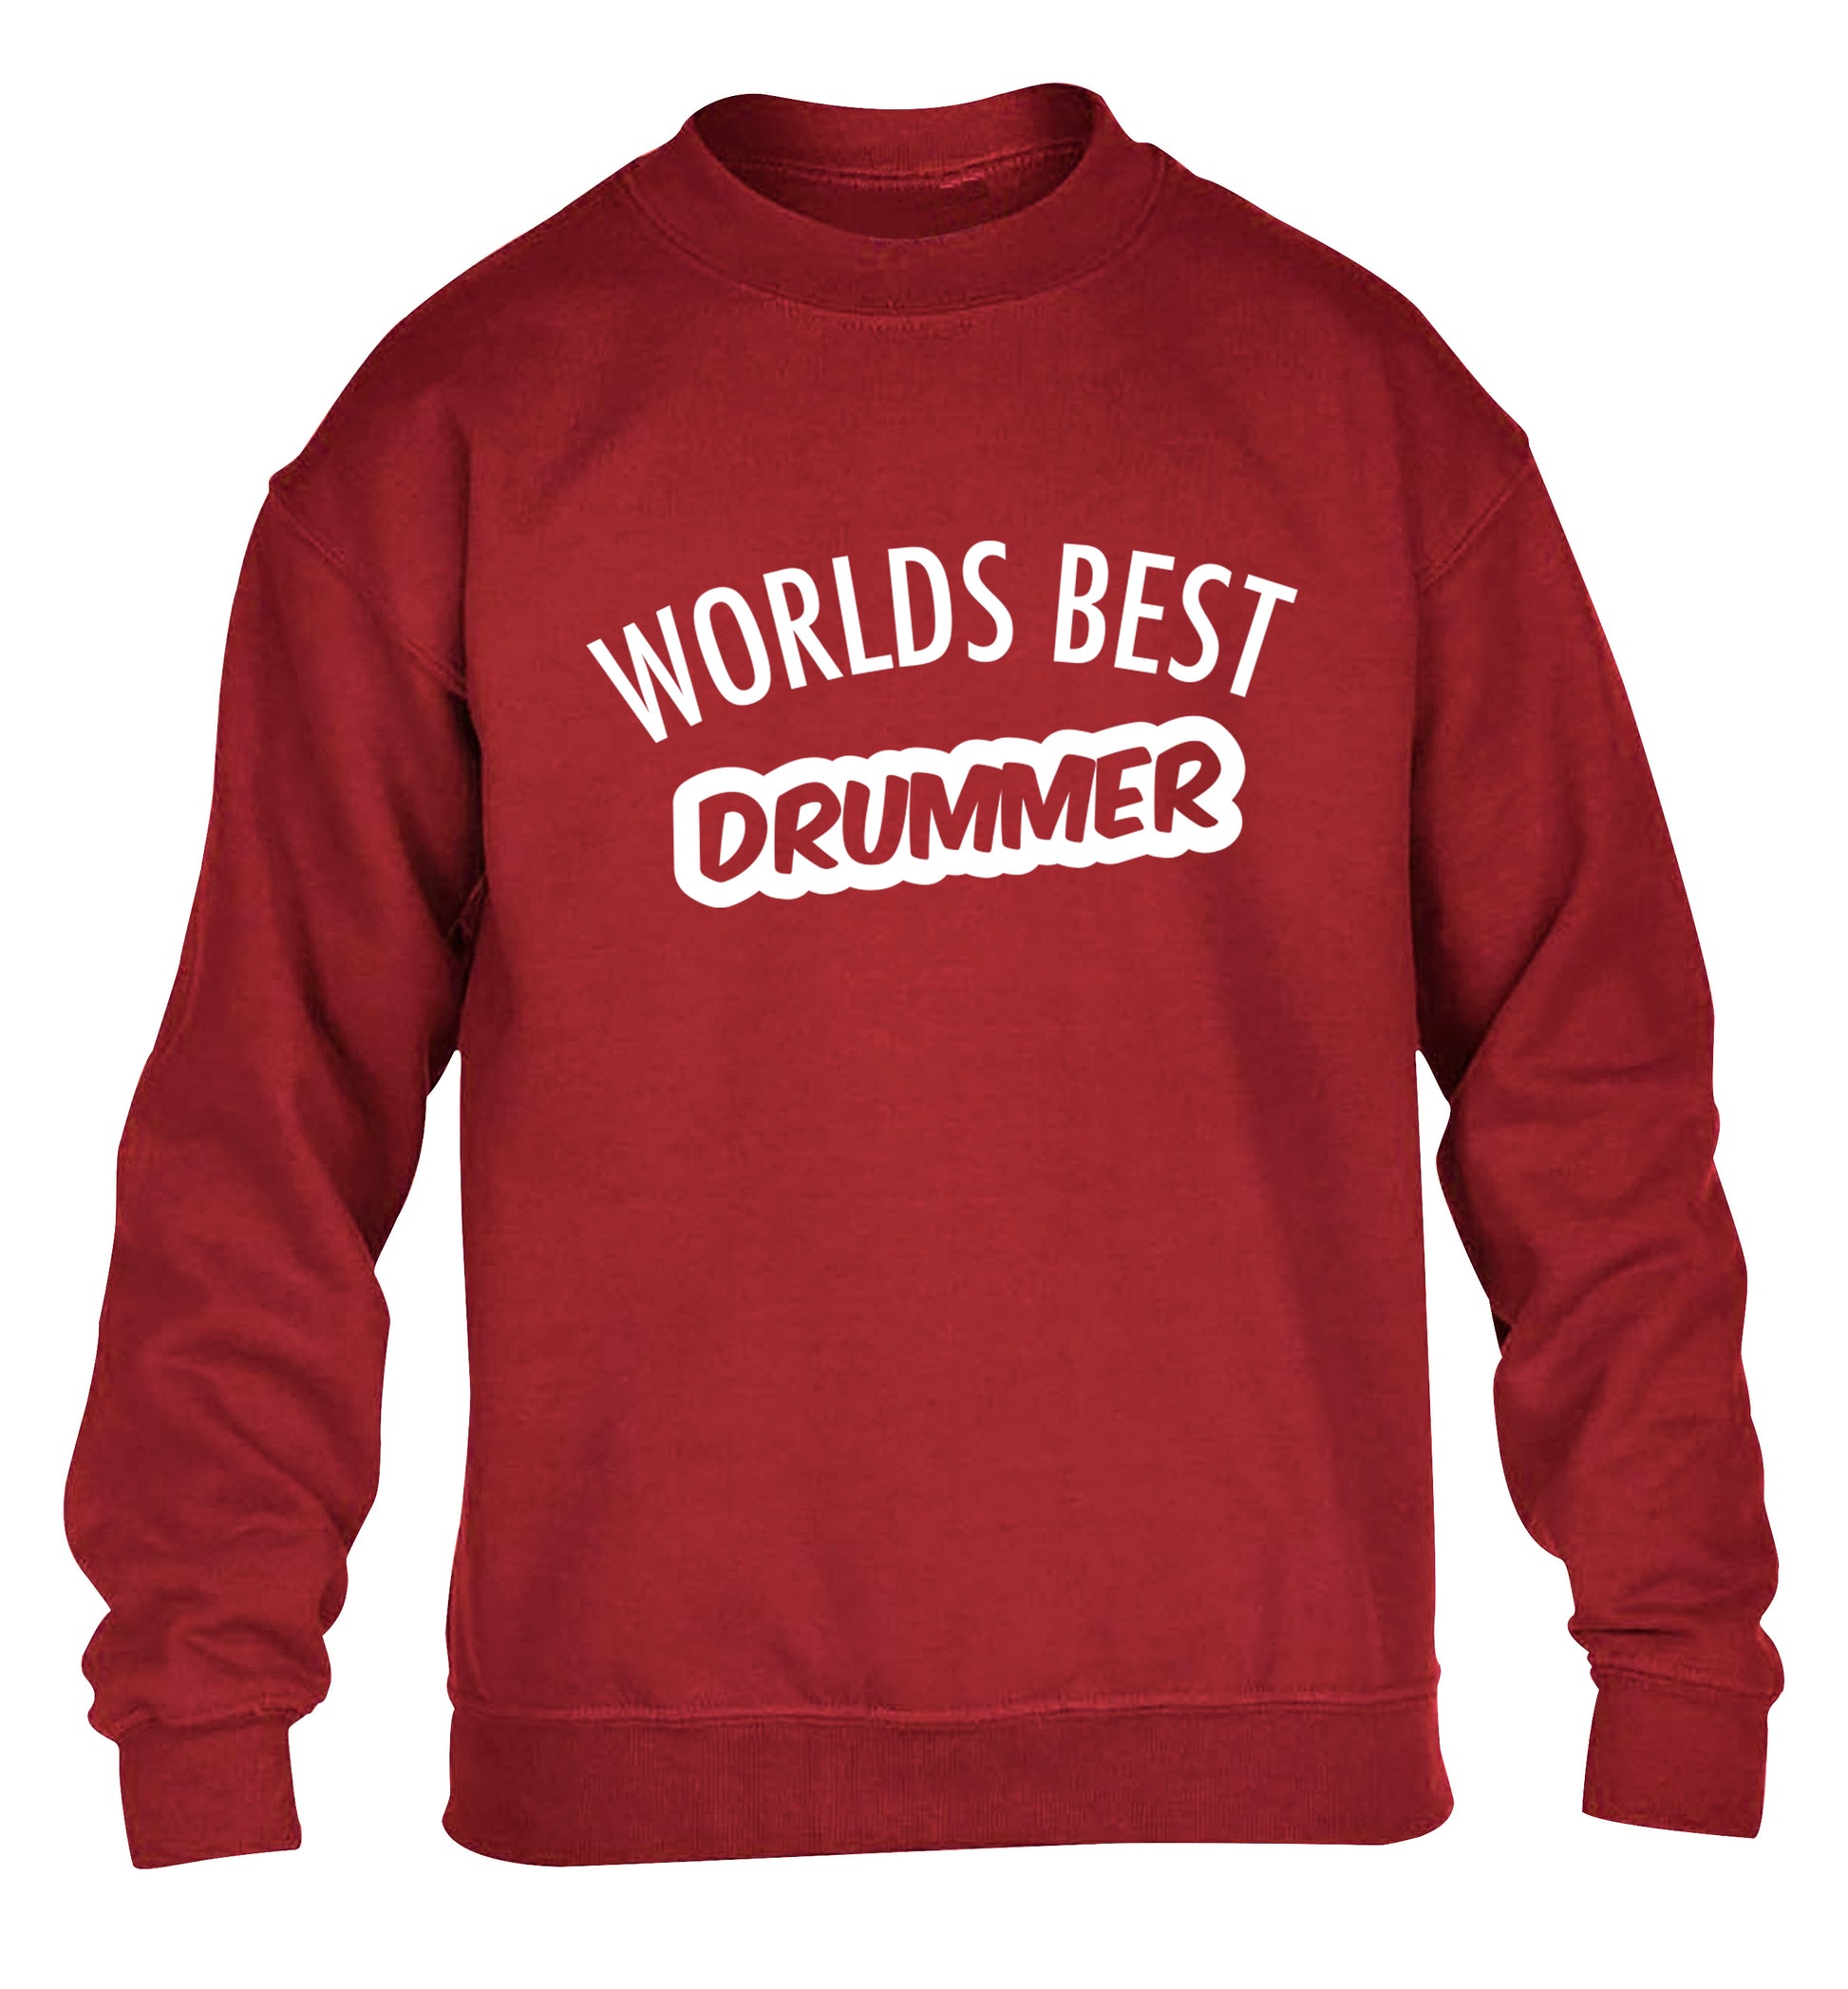 Worlds best drummer children's grey sweater 12-13 Years